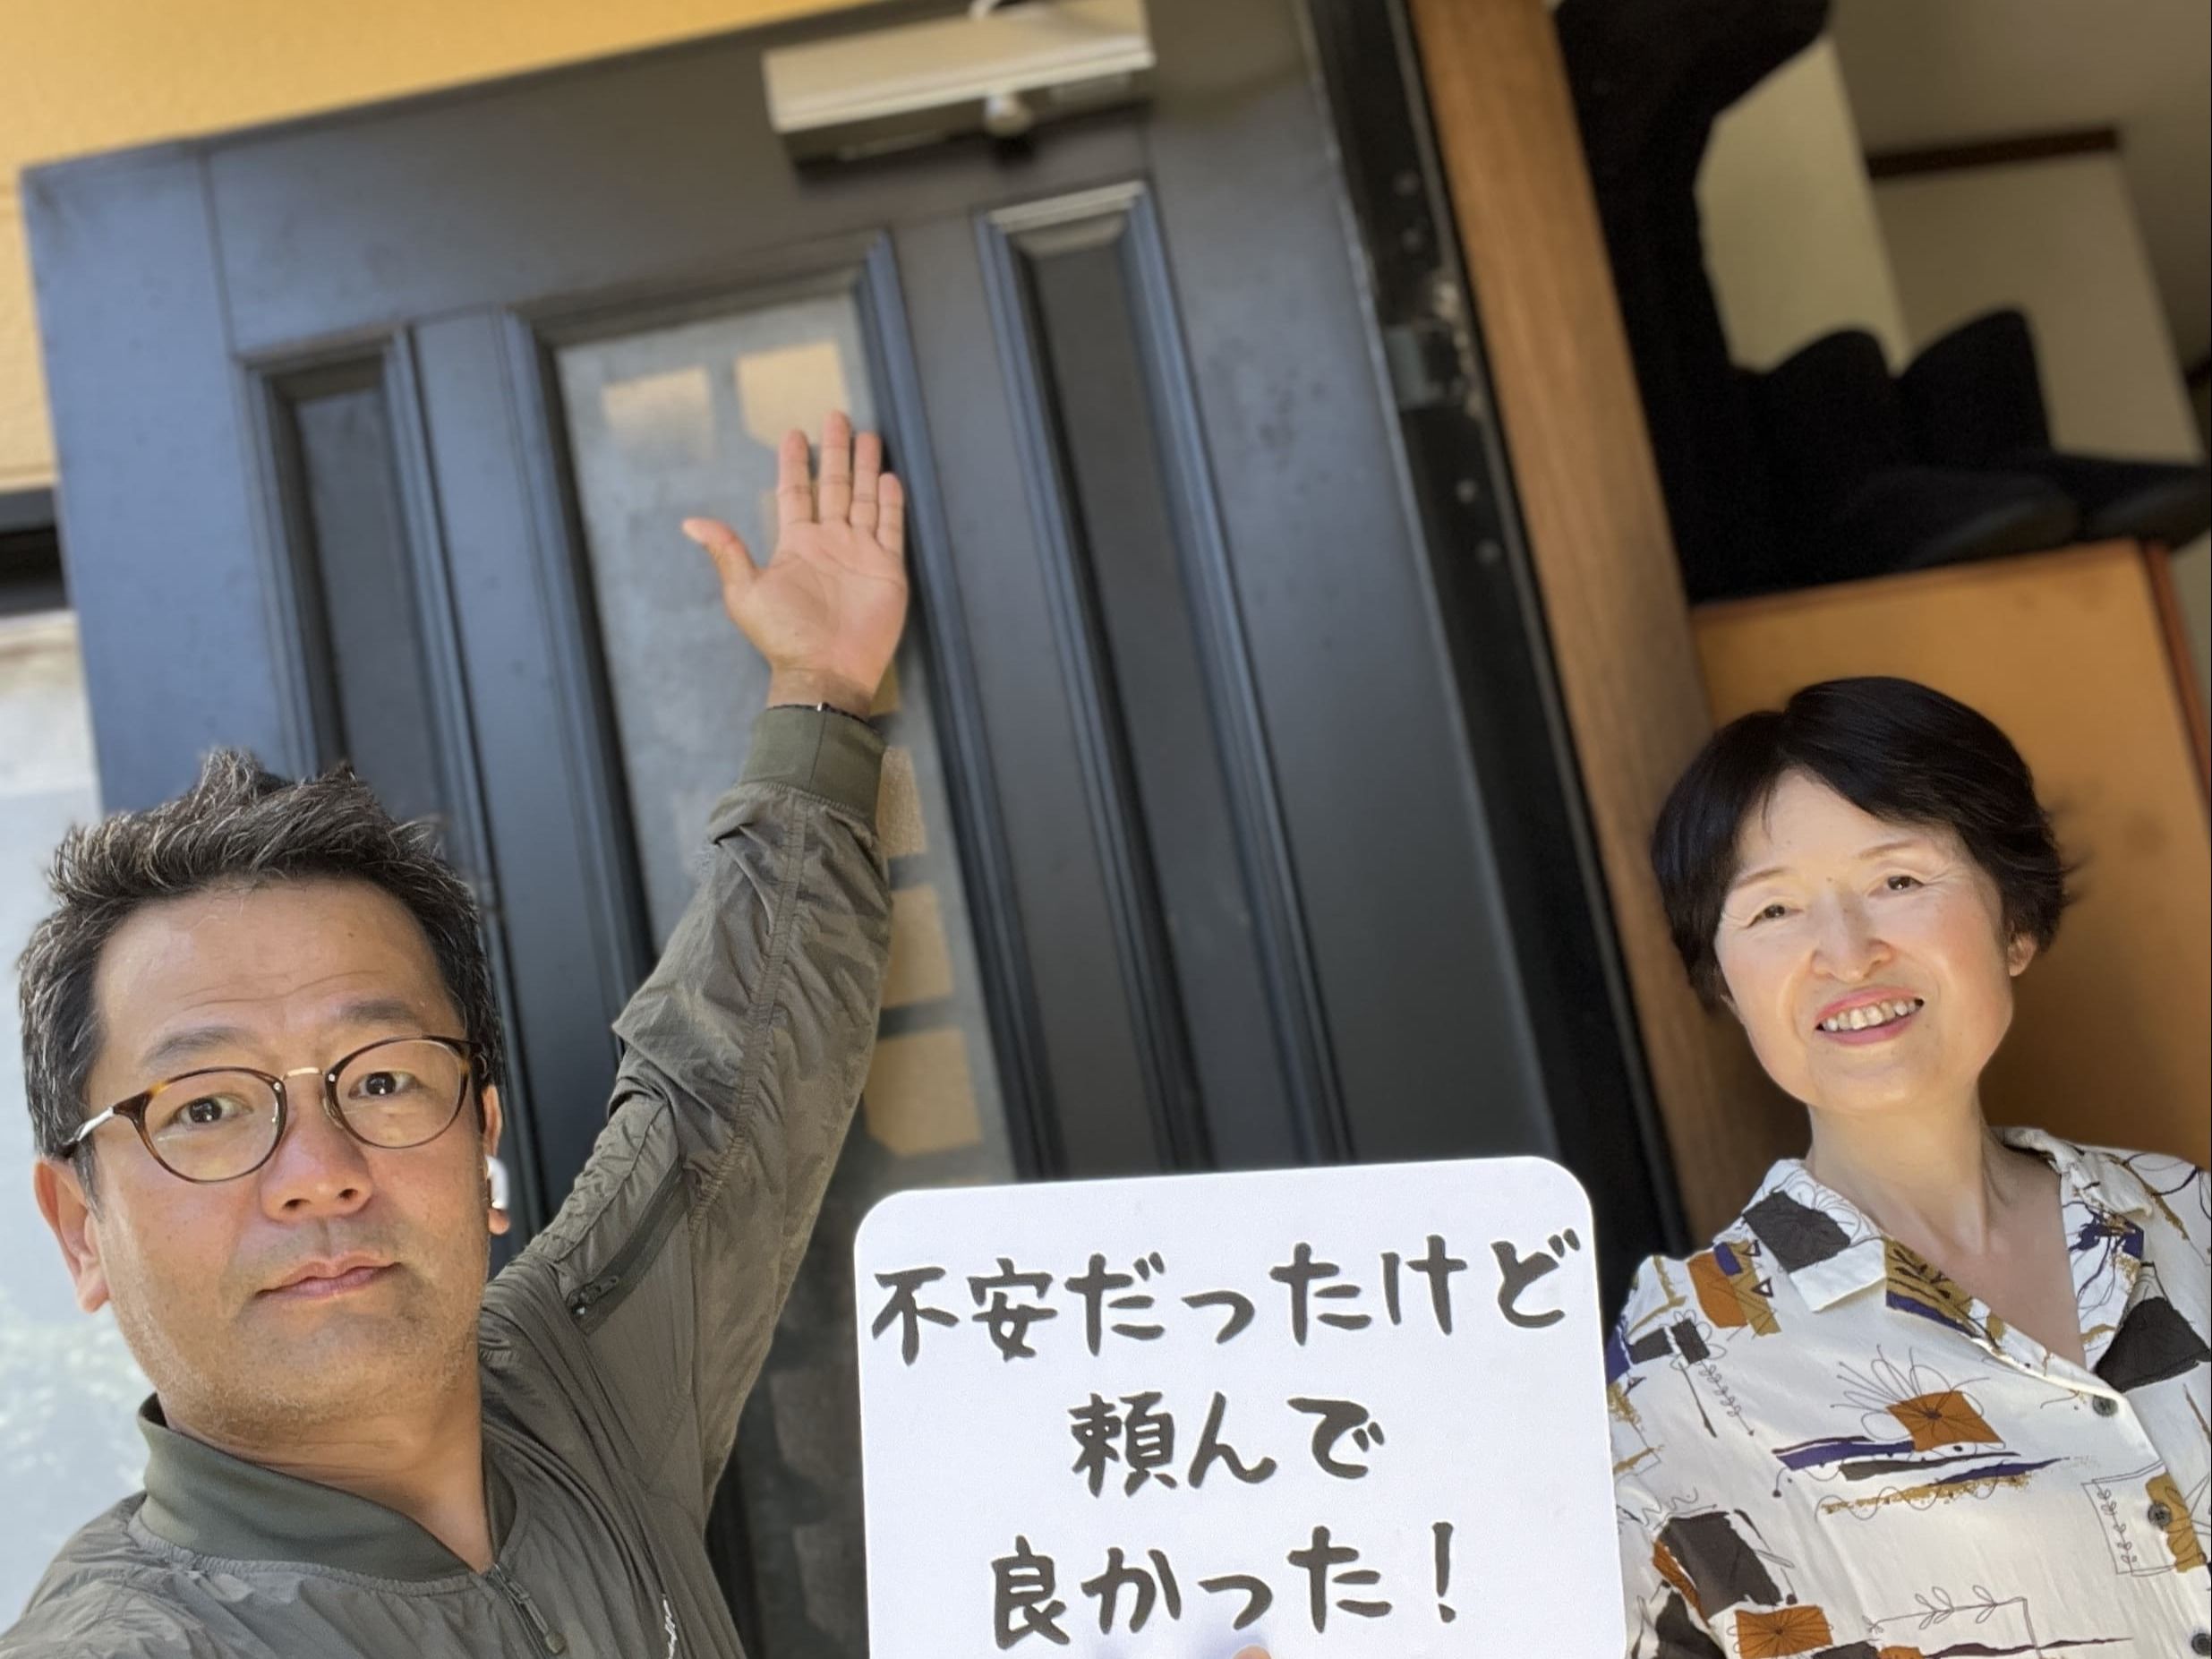 【戸田市地域】カギとドア修理コバヤシの店内・外観画像3